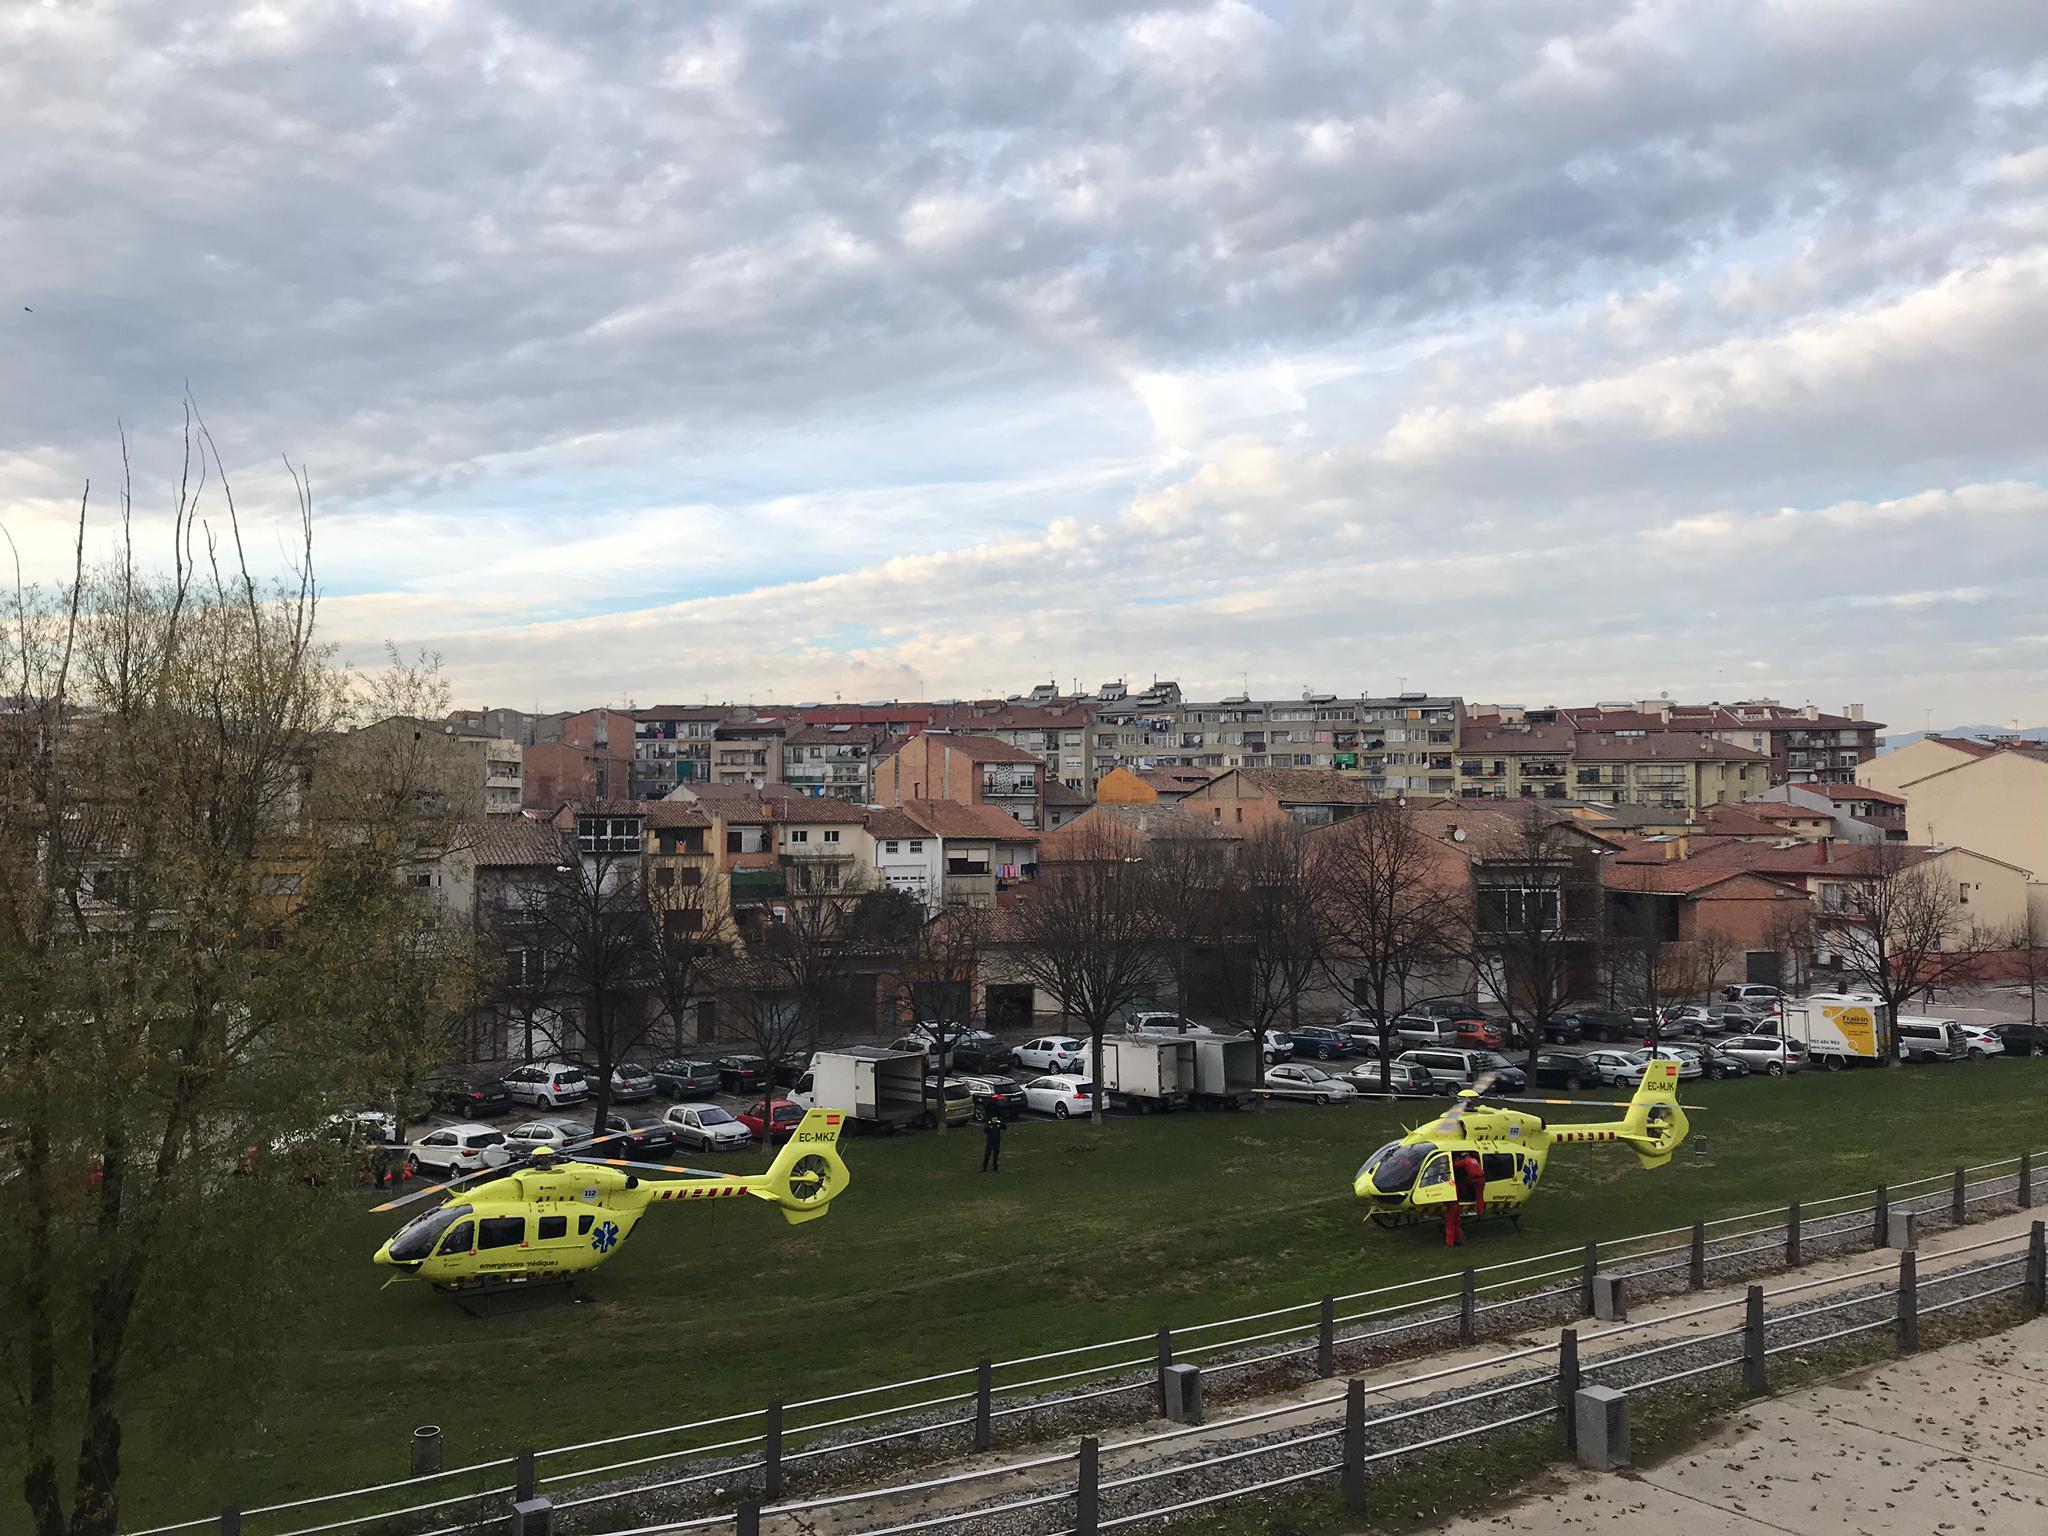 Els dos helicòpters a la zona sanitària del Puig de Manlleu